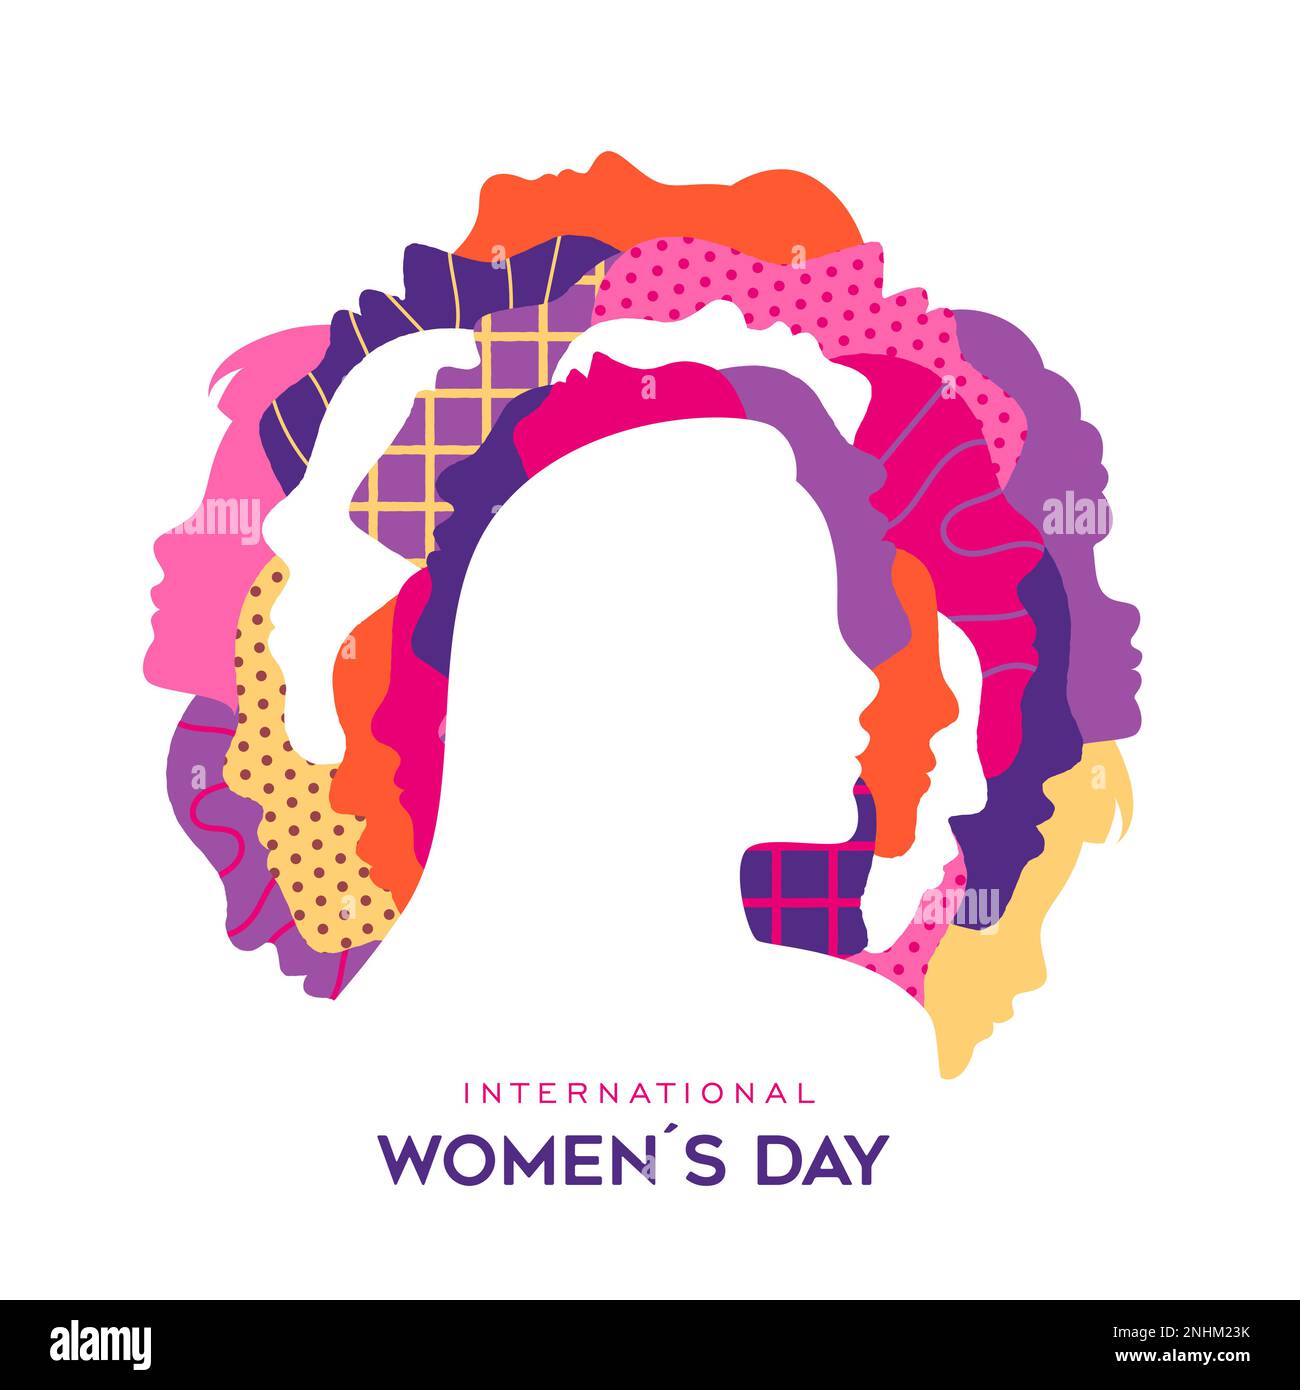 Grußkartendesign für den Internationalen Frauentag. Unterschiedliche Profile von Frauen im Kreis. Flaches Design für Feminismus, Schwesternschaft, Empowerment und Aktivismus Stock Vektor